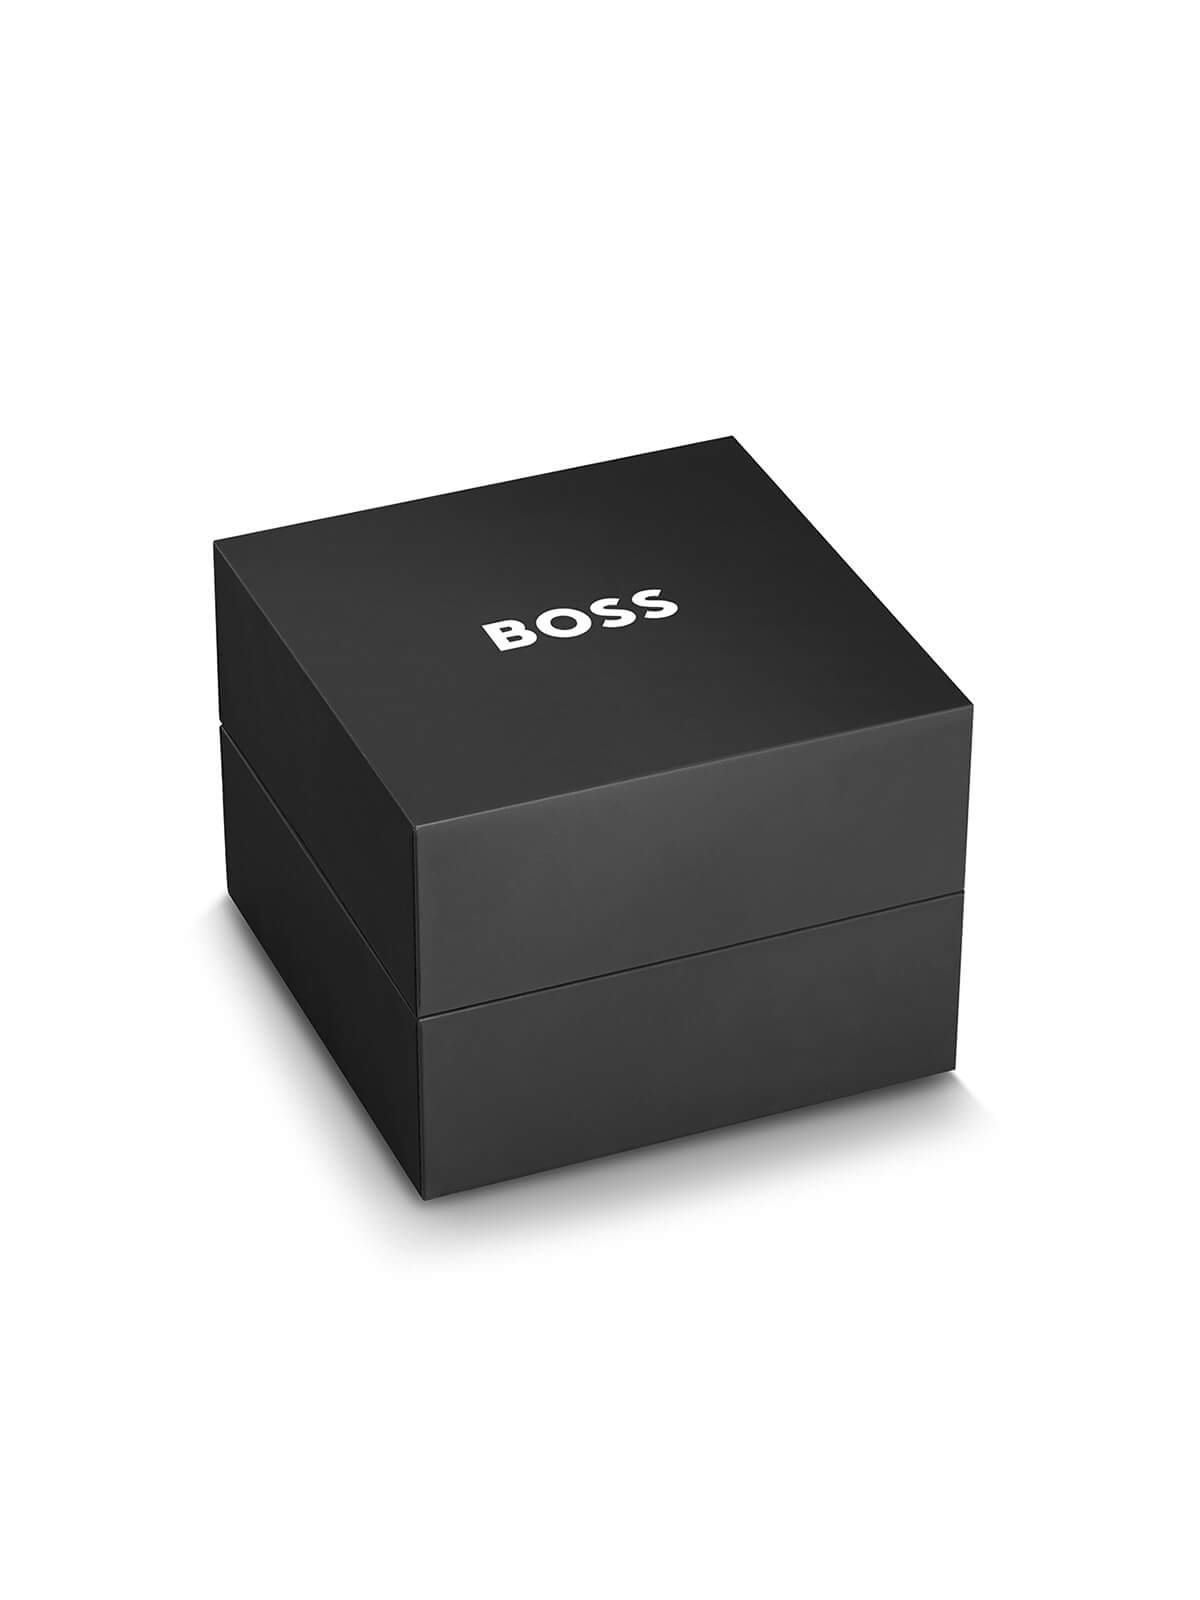 BOSS Watch Box